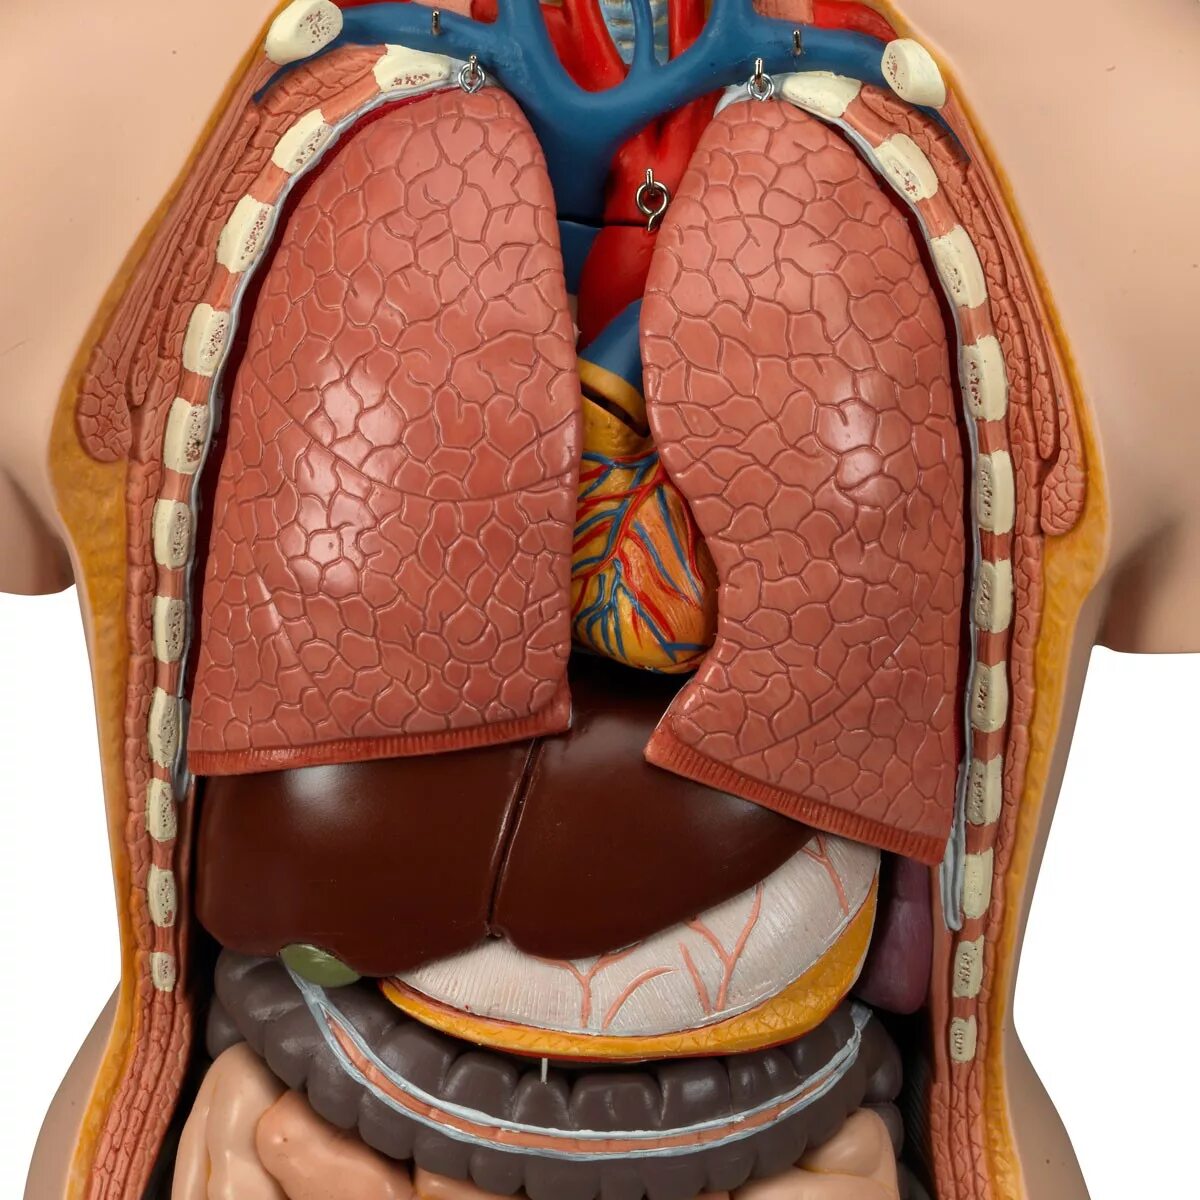 Отдельные органы человека. Модель "торс человека" (разборная). Муляжи внутренних органов. Анатомическая модель торса человека.